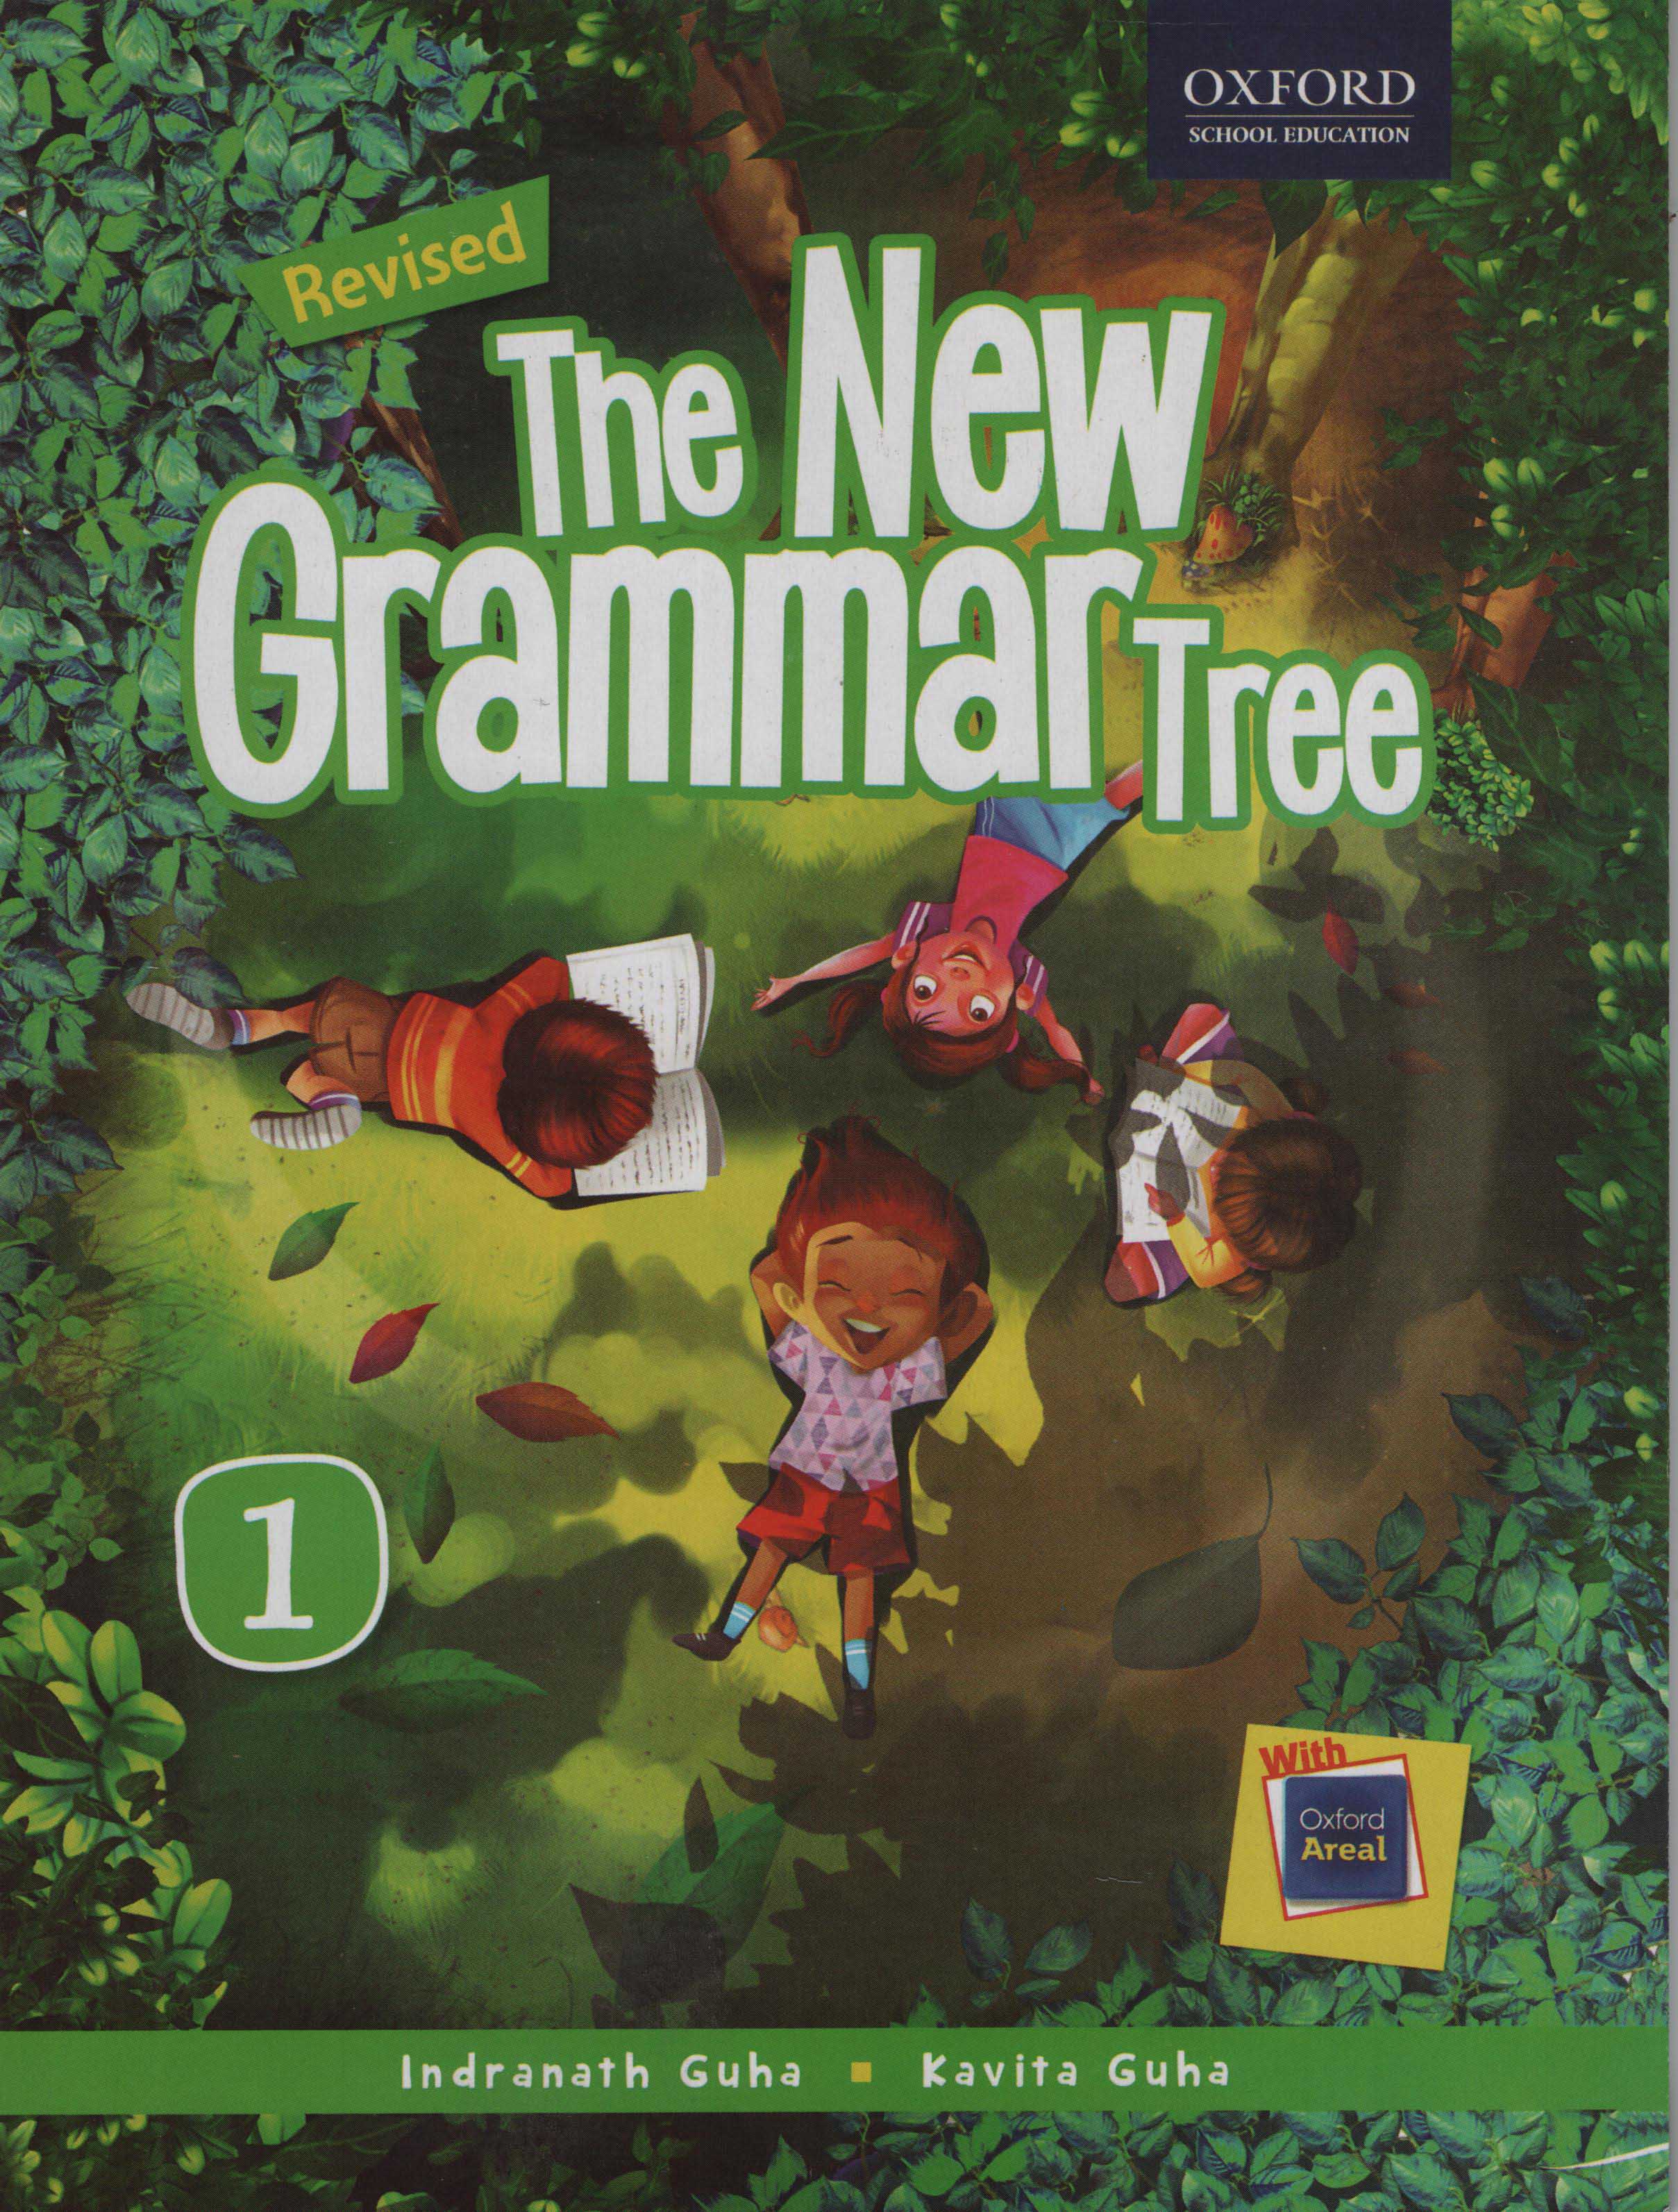 The New Grammar Tree Book 1